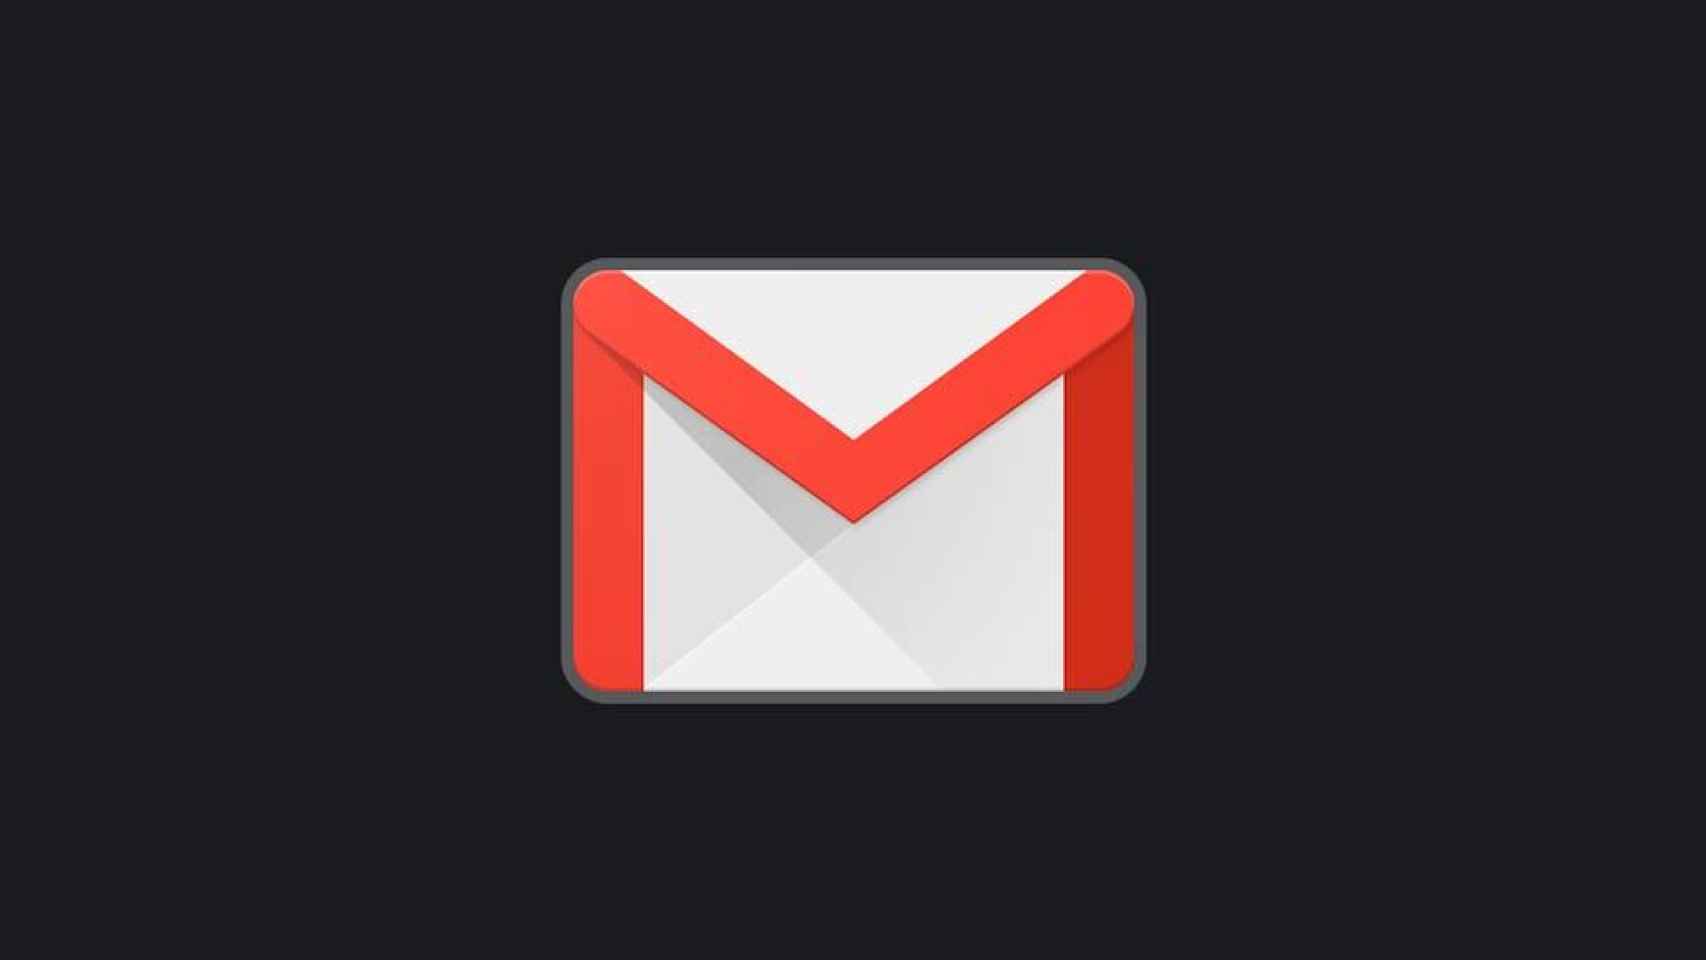 Es oficial: Gmail deja de ser una aplicación de correo electrónico